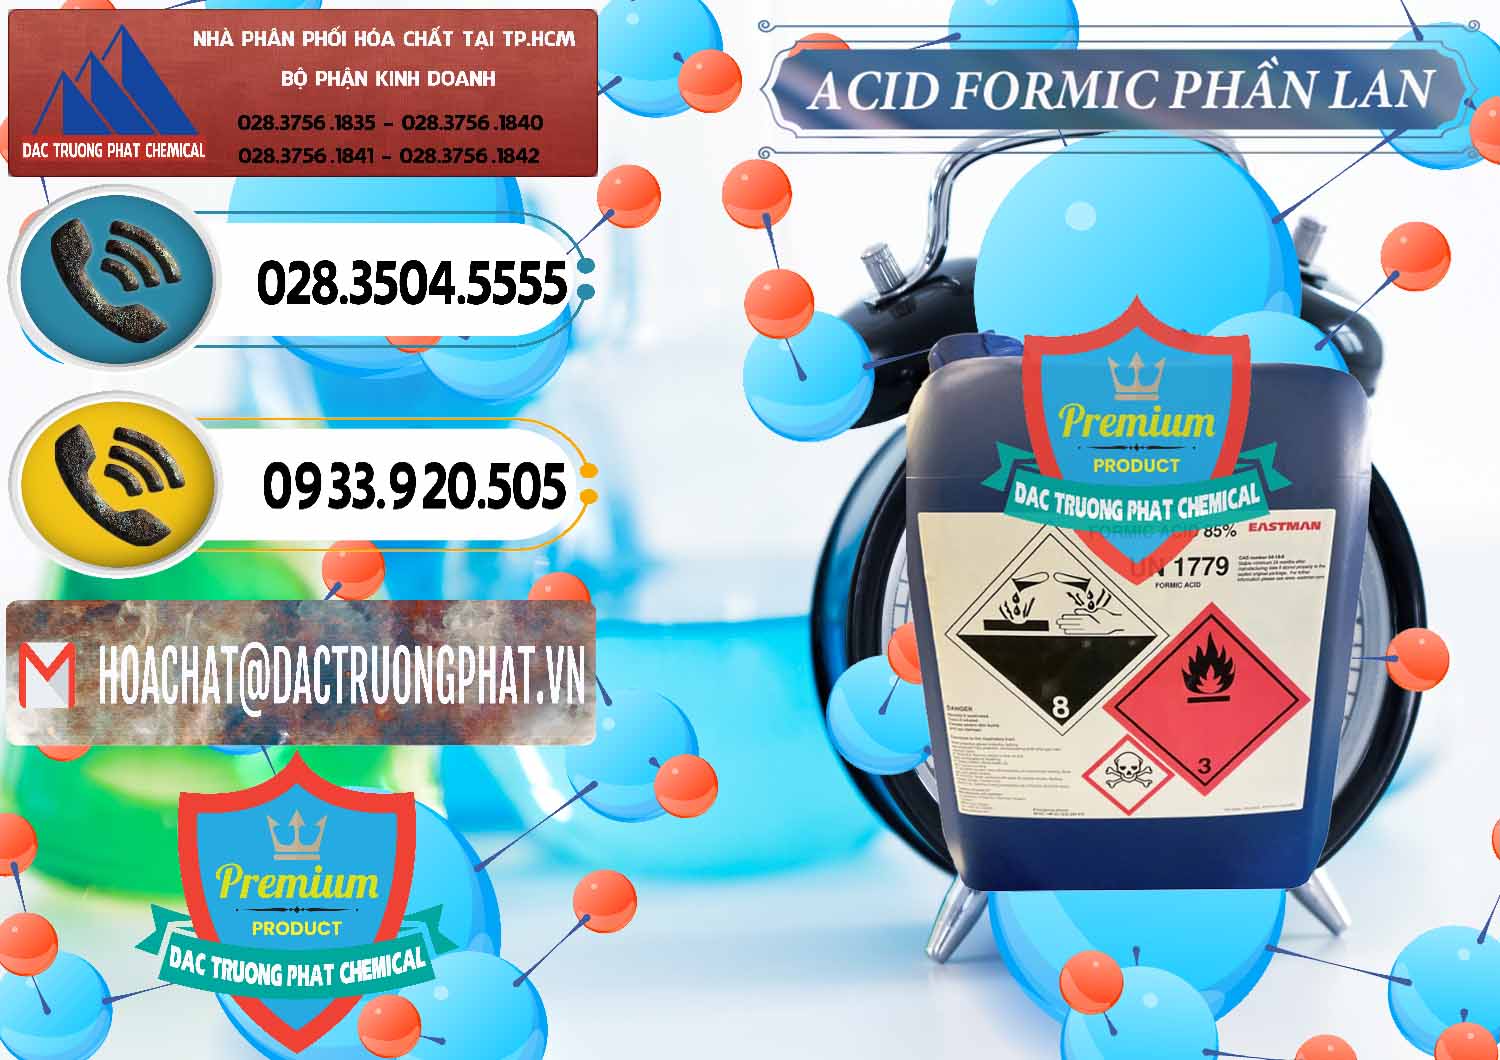 Đơn vị chuyên bán & cung ứng Acid Formic - Axit Formic Phần Lan Finland - 0376 - Chuyên phân phối ( bán ) hóa chất tại TP.HCM - hoachatdetnhuom.vn